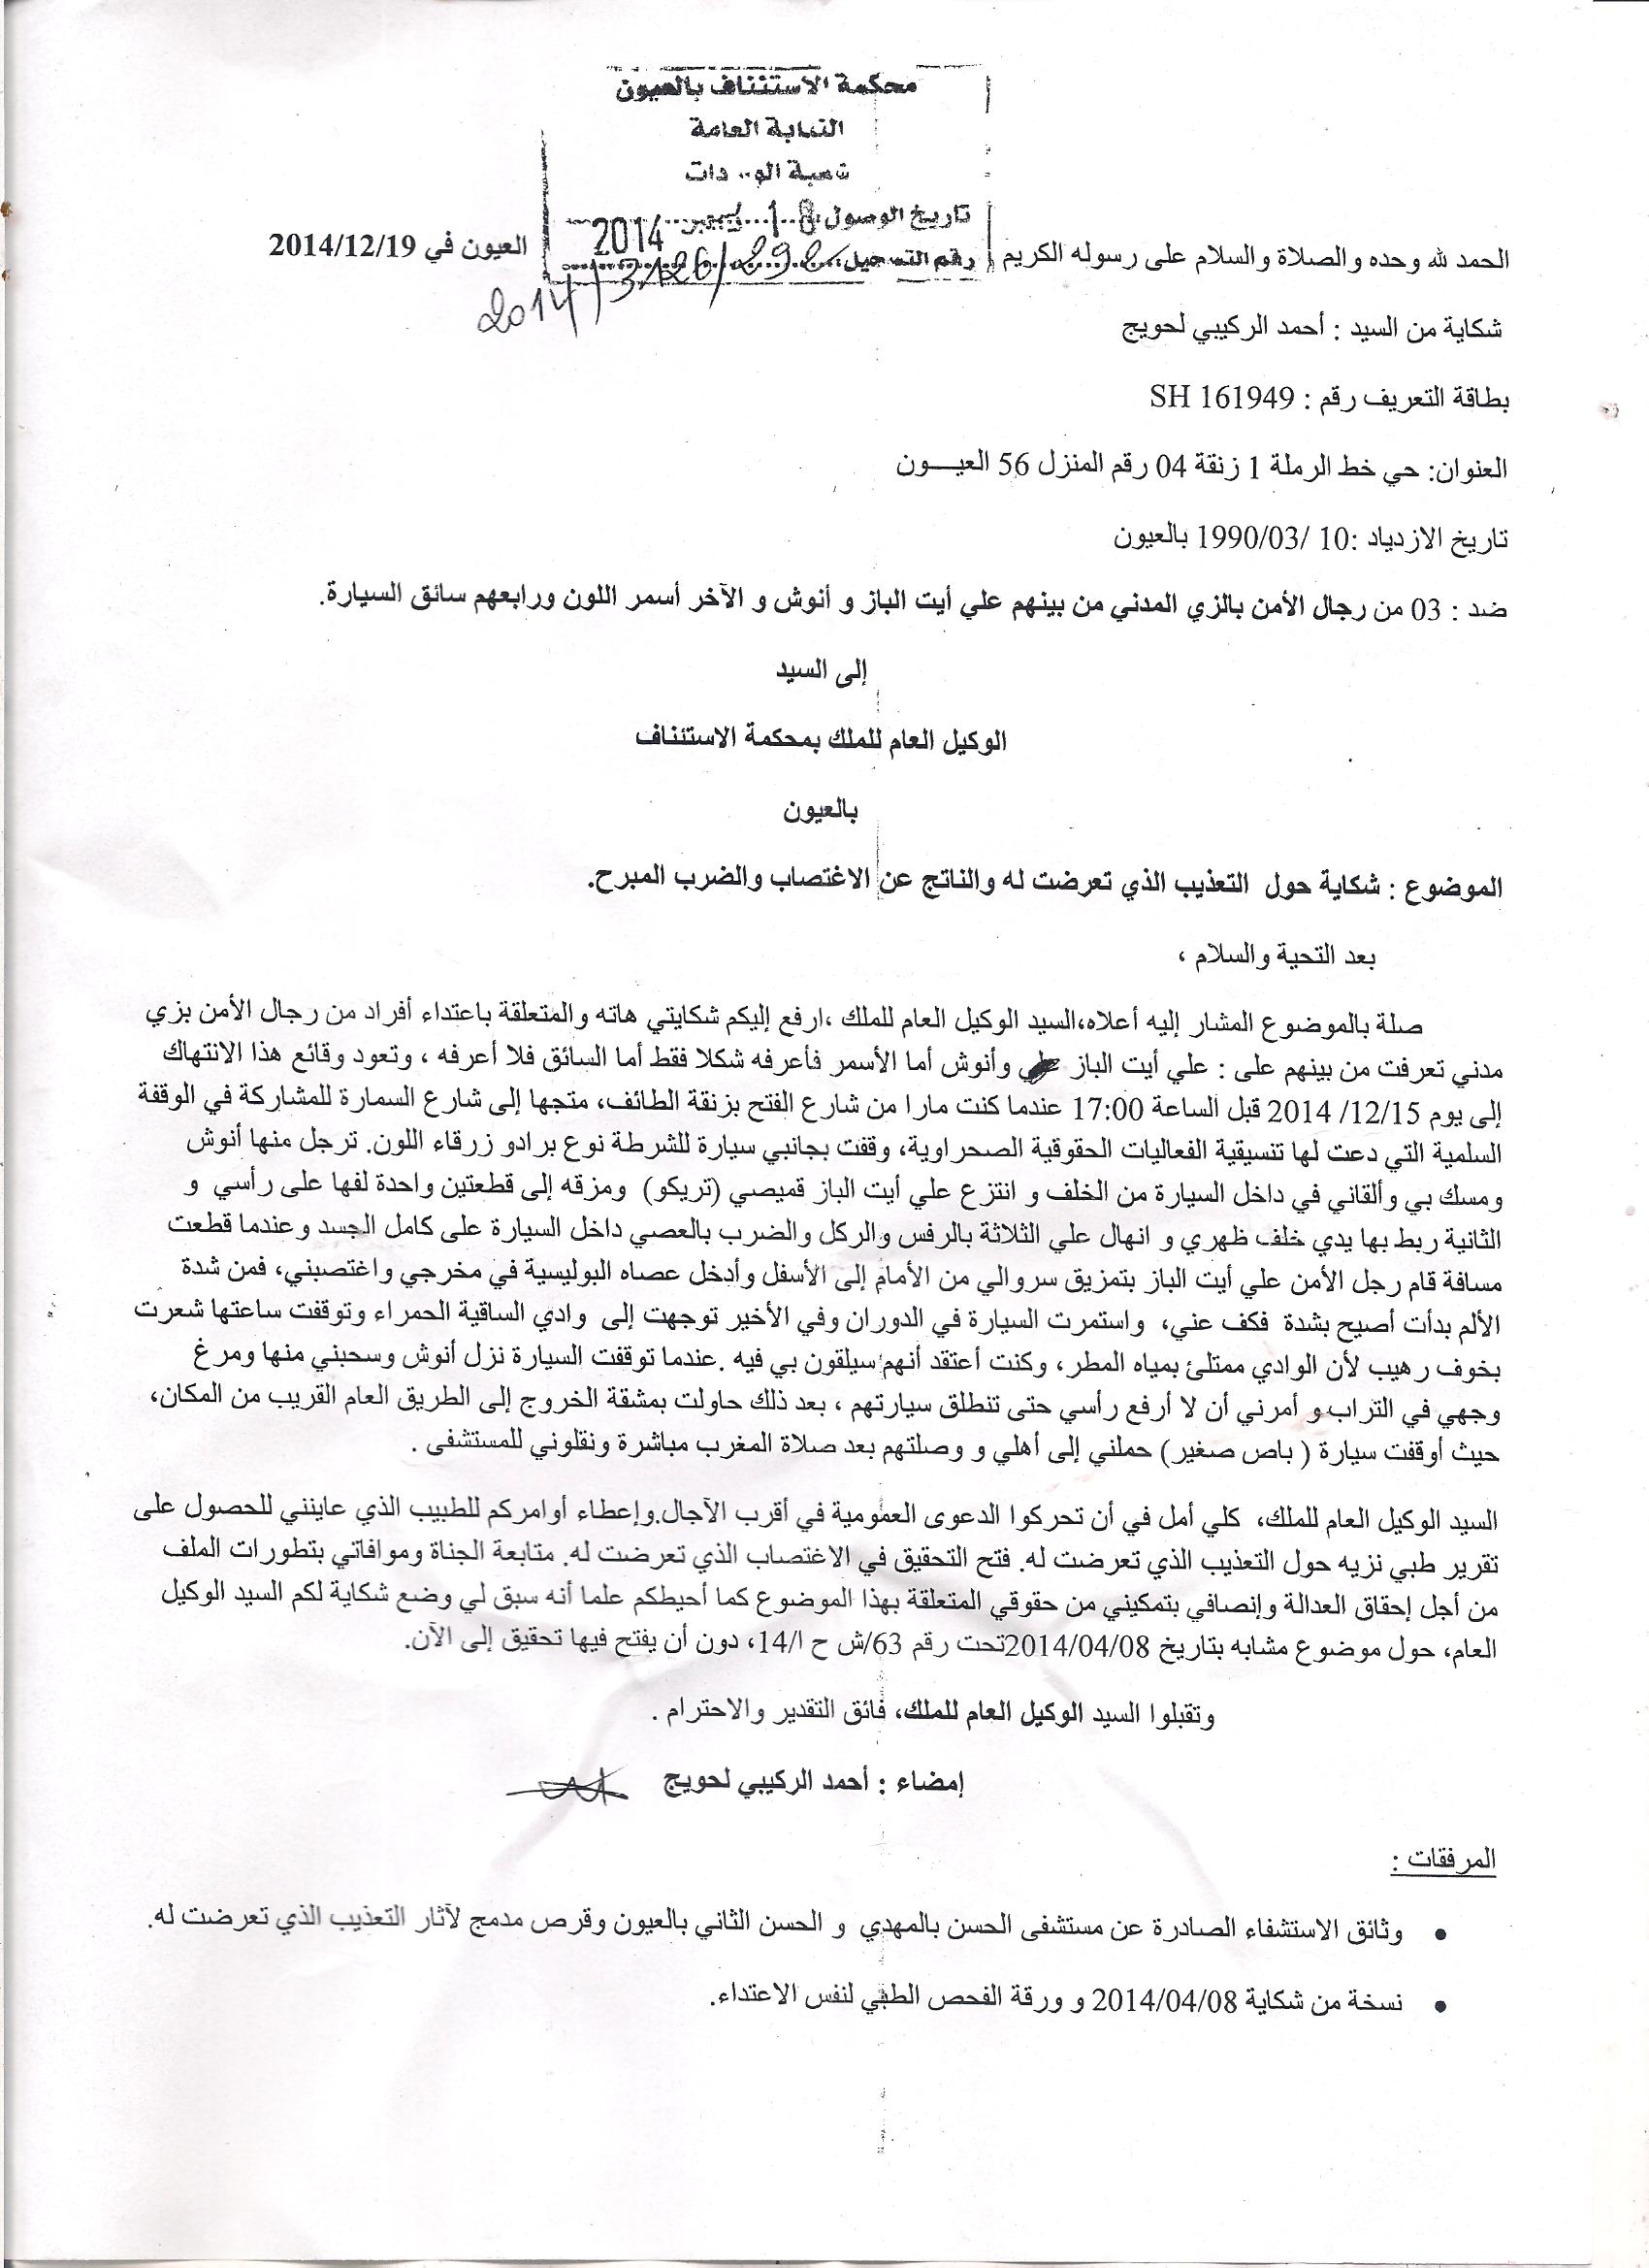 Copia de la denuncia presentada por la víctima ante las Autoridades Marroquís 